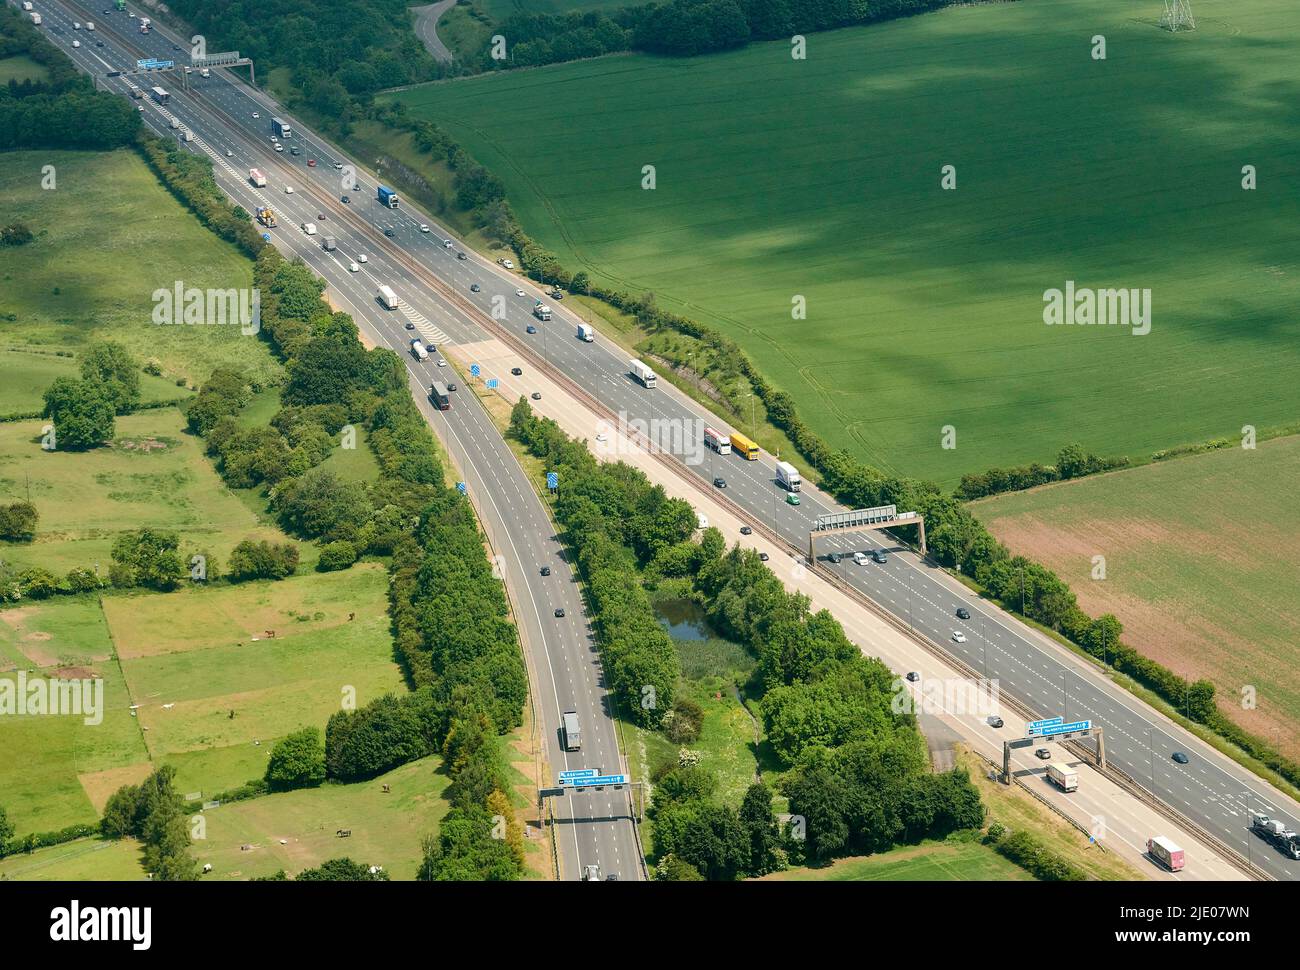 Une vue aérienne de la jonction où la nouvelle autoroute A1, Aberford West Yorkshire, Royaume-Uni, rejoint la M1 venant du sud de Leeds Banque D'Images